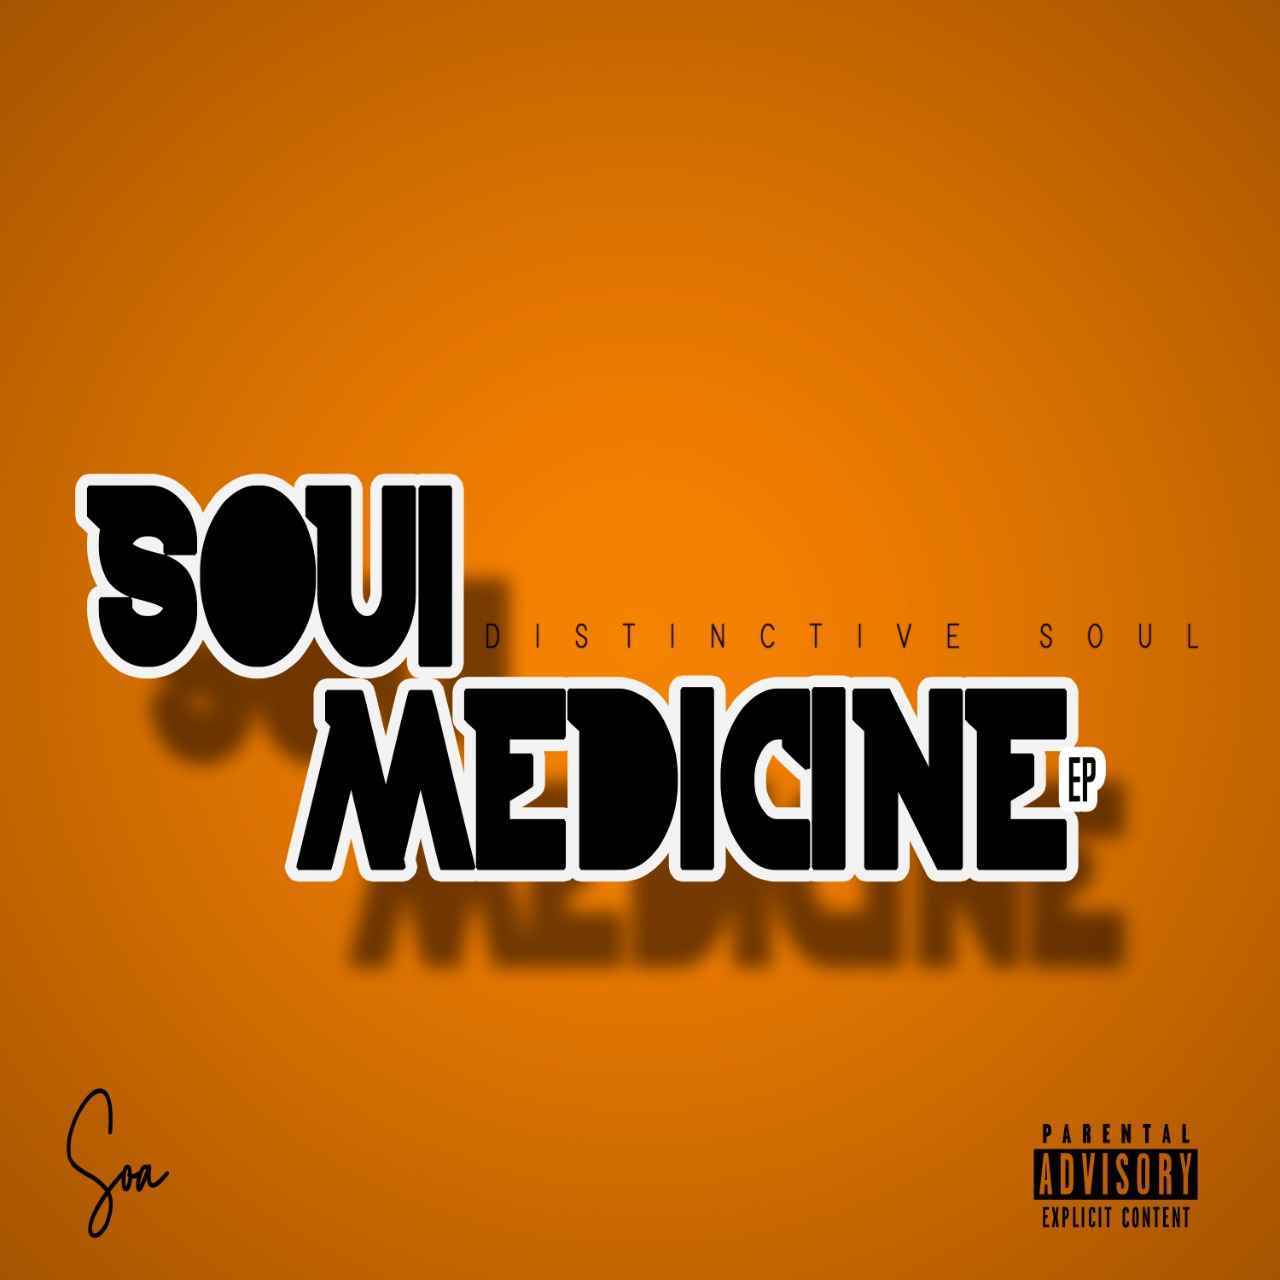 Distinctive Soul Soul Medicine